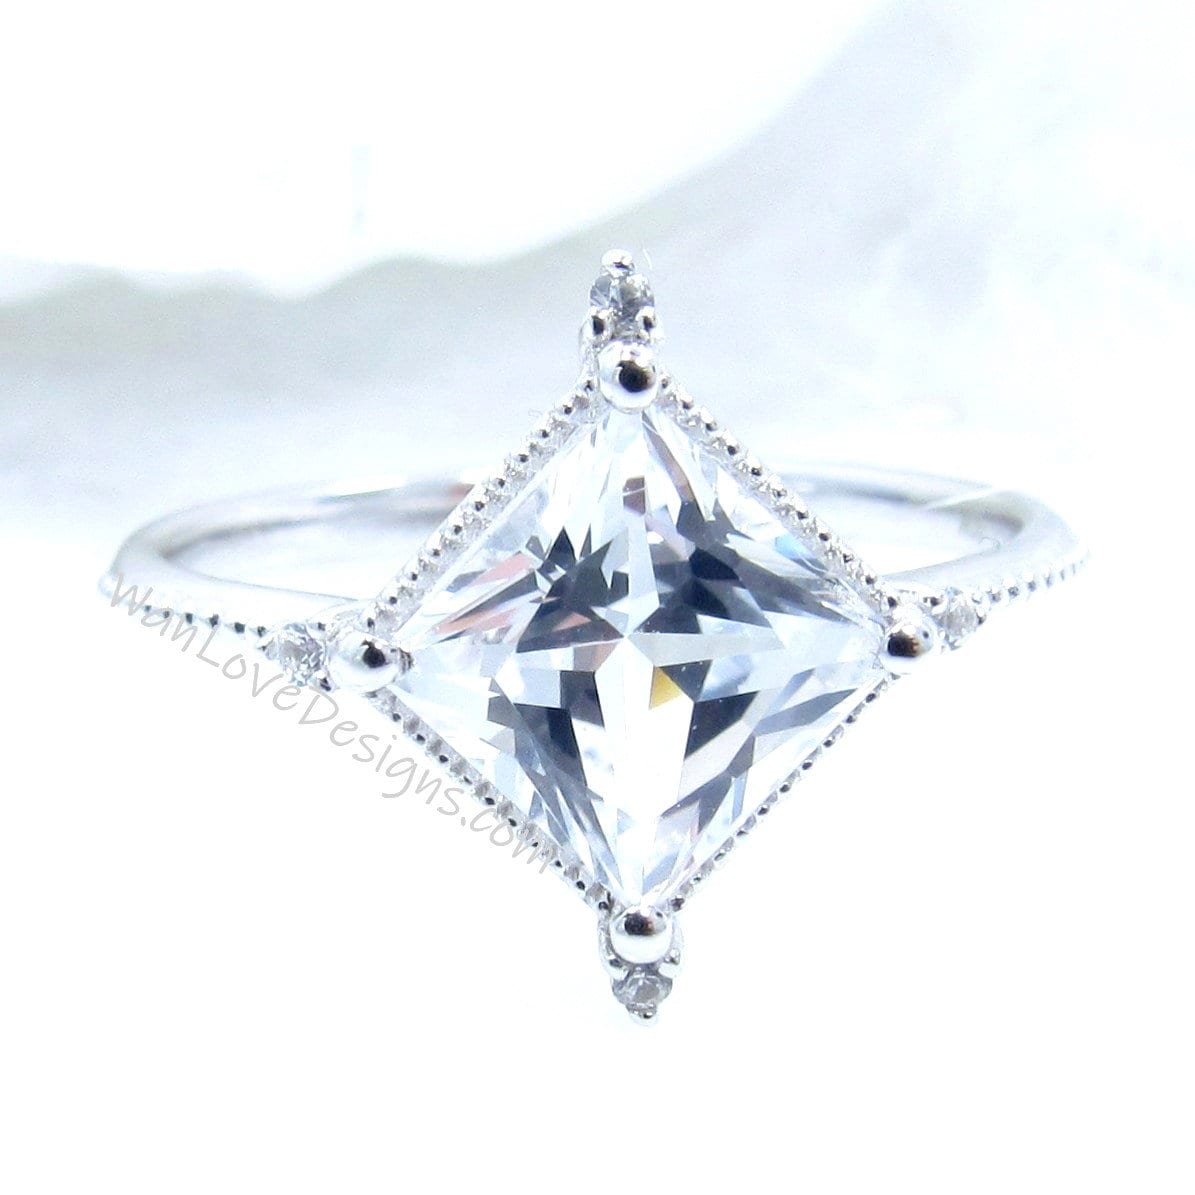 White Sapphire & Diamond Milgrain Kite NSEW Princess Engagement Ring, Custom,14k 18k White Yellow Rose Gold-Platinum,Wedding, WanLoveDesigns